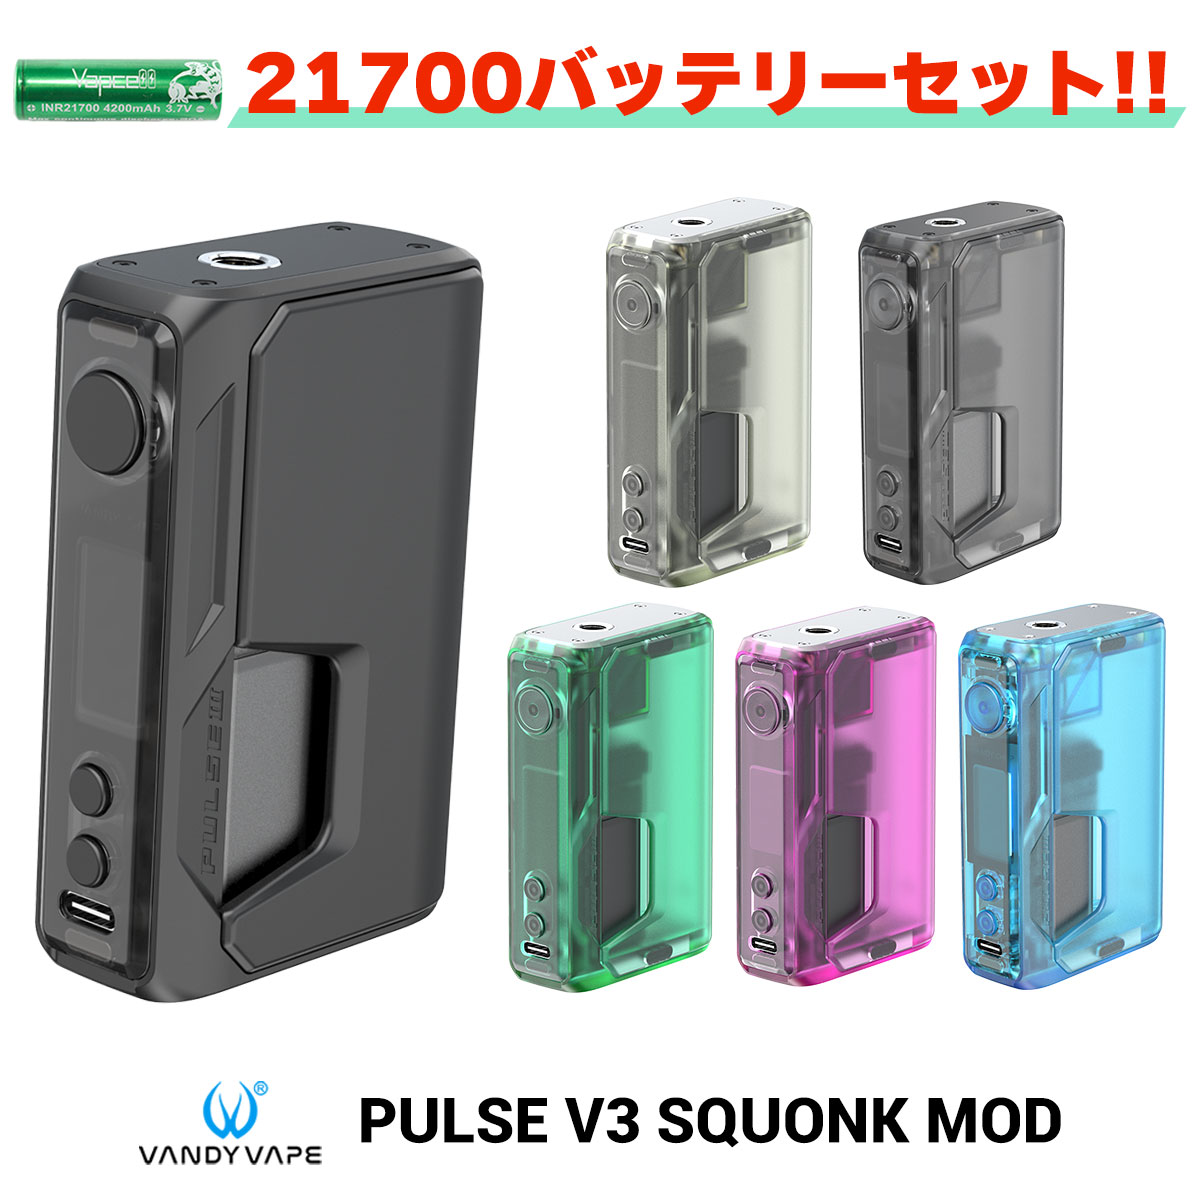 【バッテリーセット】VandyVape Pulse V3 Squonk Mod ヴァンディー べイプ バンディー パルス V3 電子タバコ vape テ…